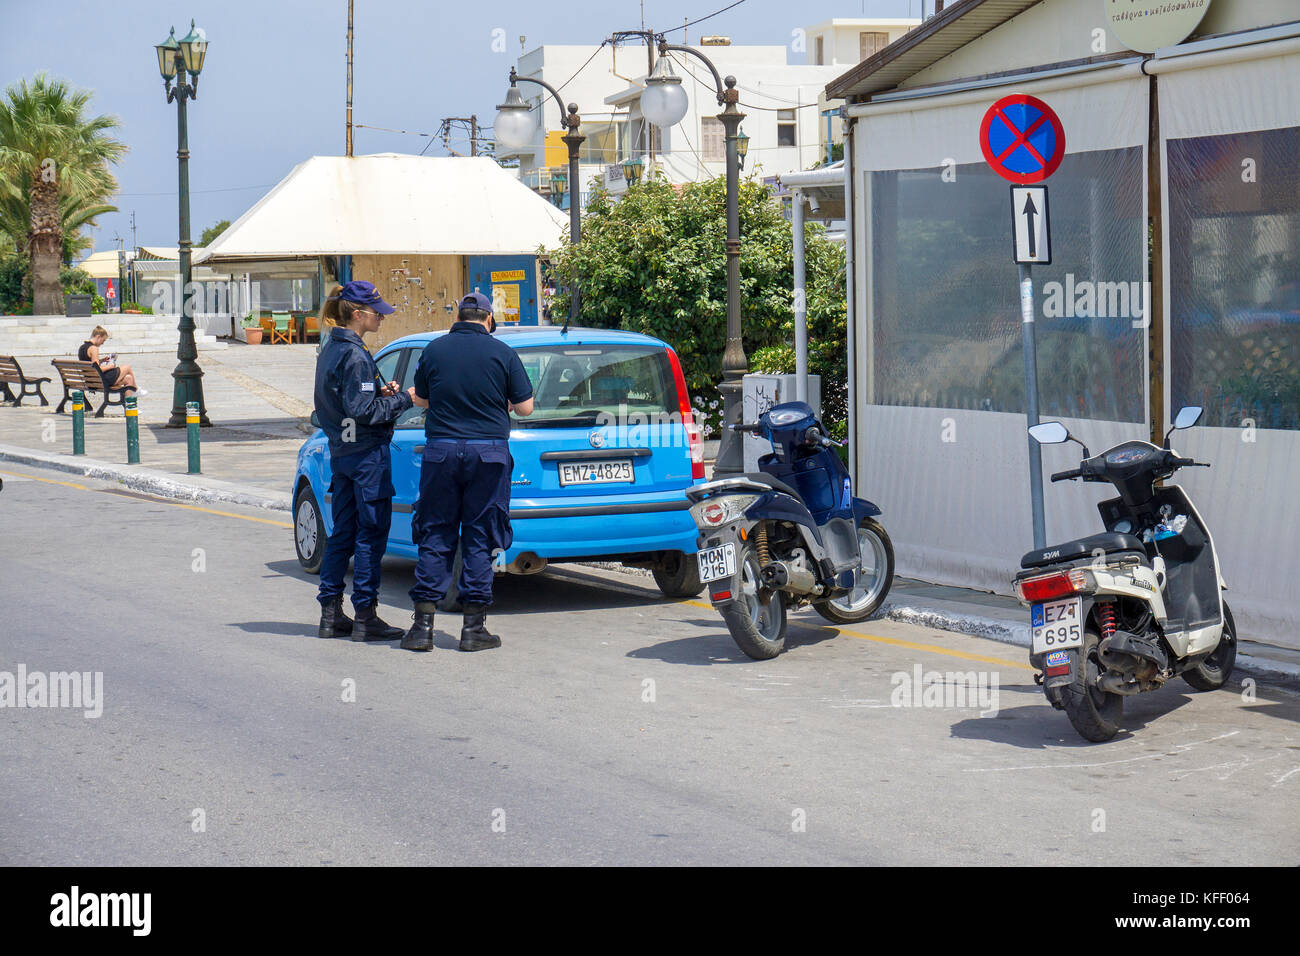 La police grecque à un parking à aucune attente, Naxos-ville, l'île de Naxos, Cyclades, Mer Égée, Grèce Banque D'Images